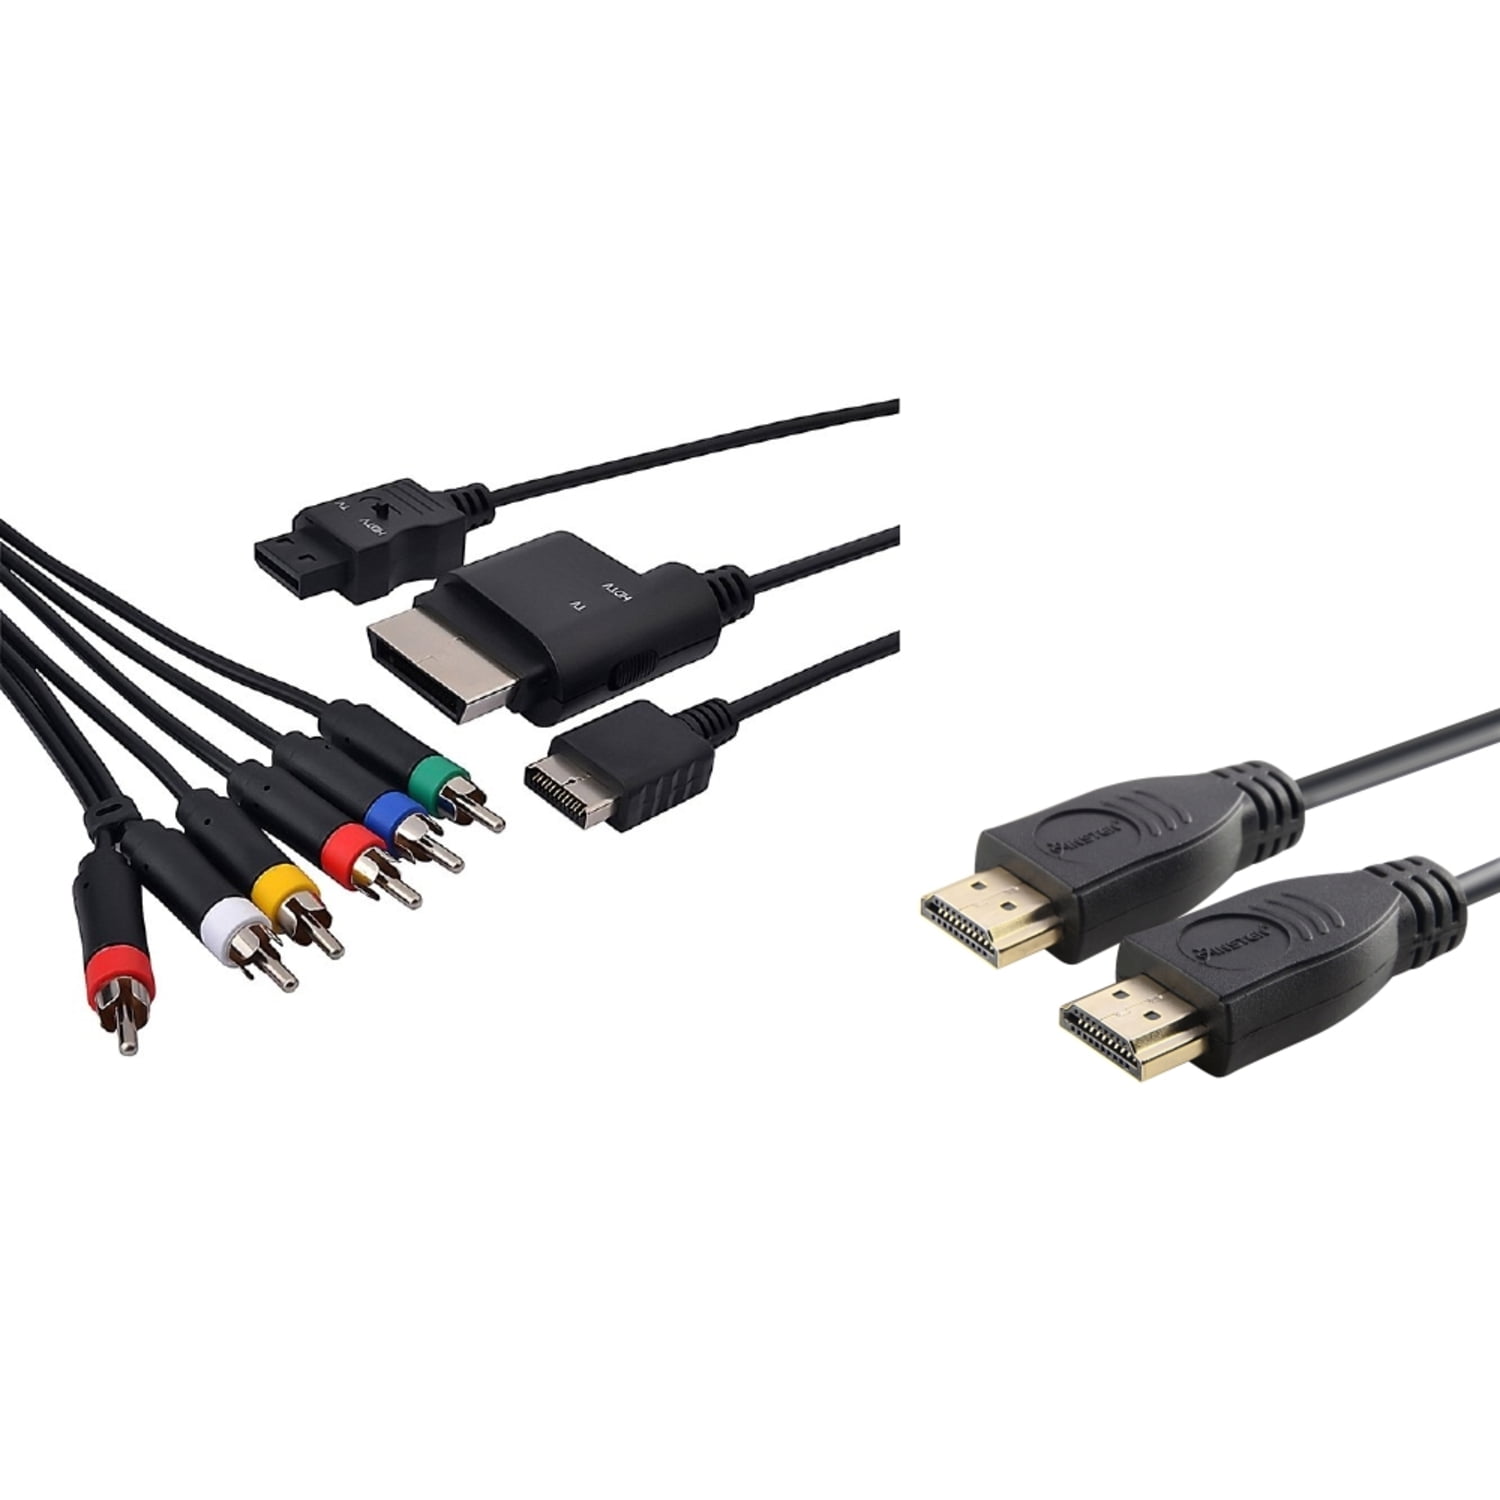 Av multi. Av Multi out кабель ps3. HDMI кабель Nintendo. Nintendo Wii переходник HDMI. Av Multi out кабель ps3 распиновка.